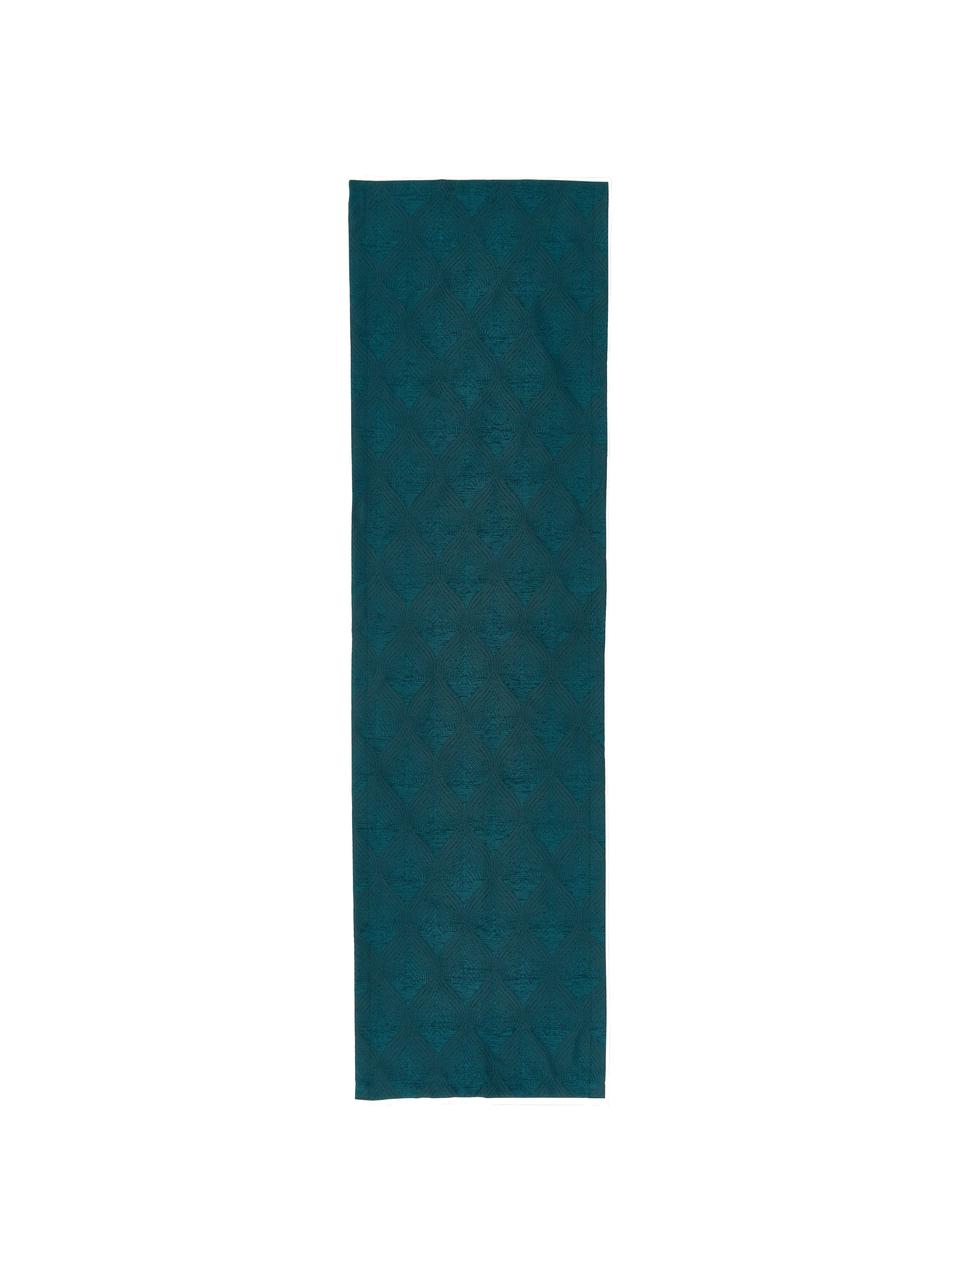 Bieżnik Milo, 100% poliester, Zielony, S 40 x D 145 cm